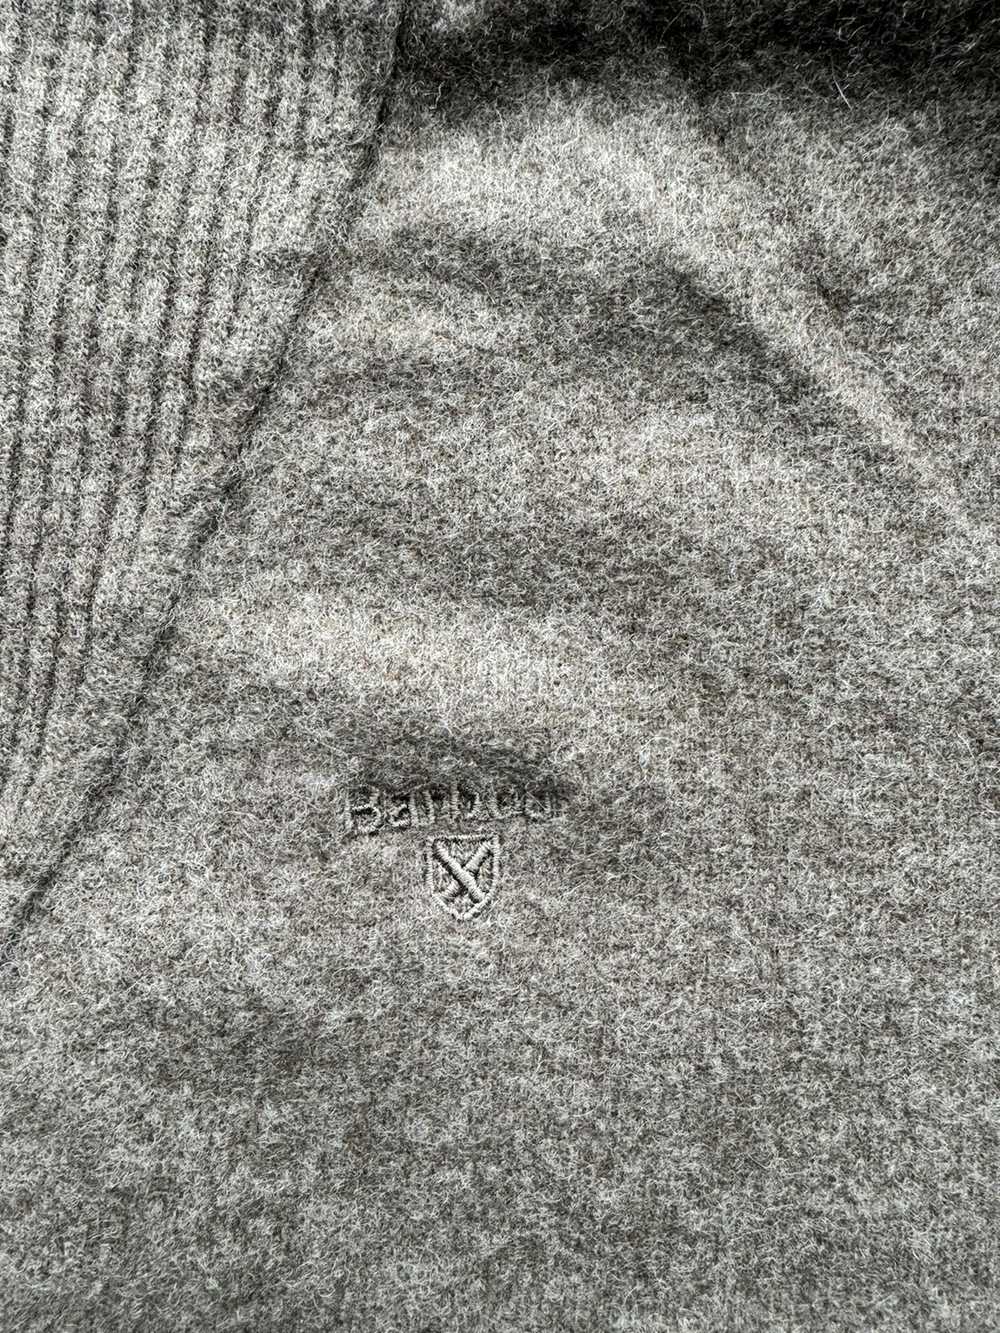 Barbour × Luxury Barbour Wool 1/4 Zip Sweater - image 6